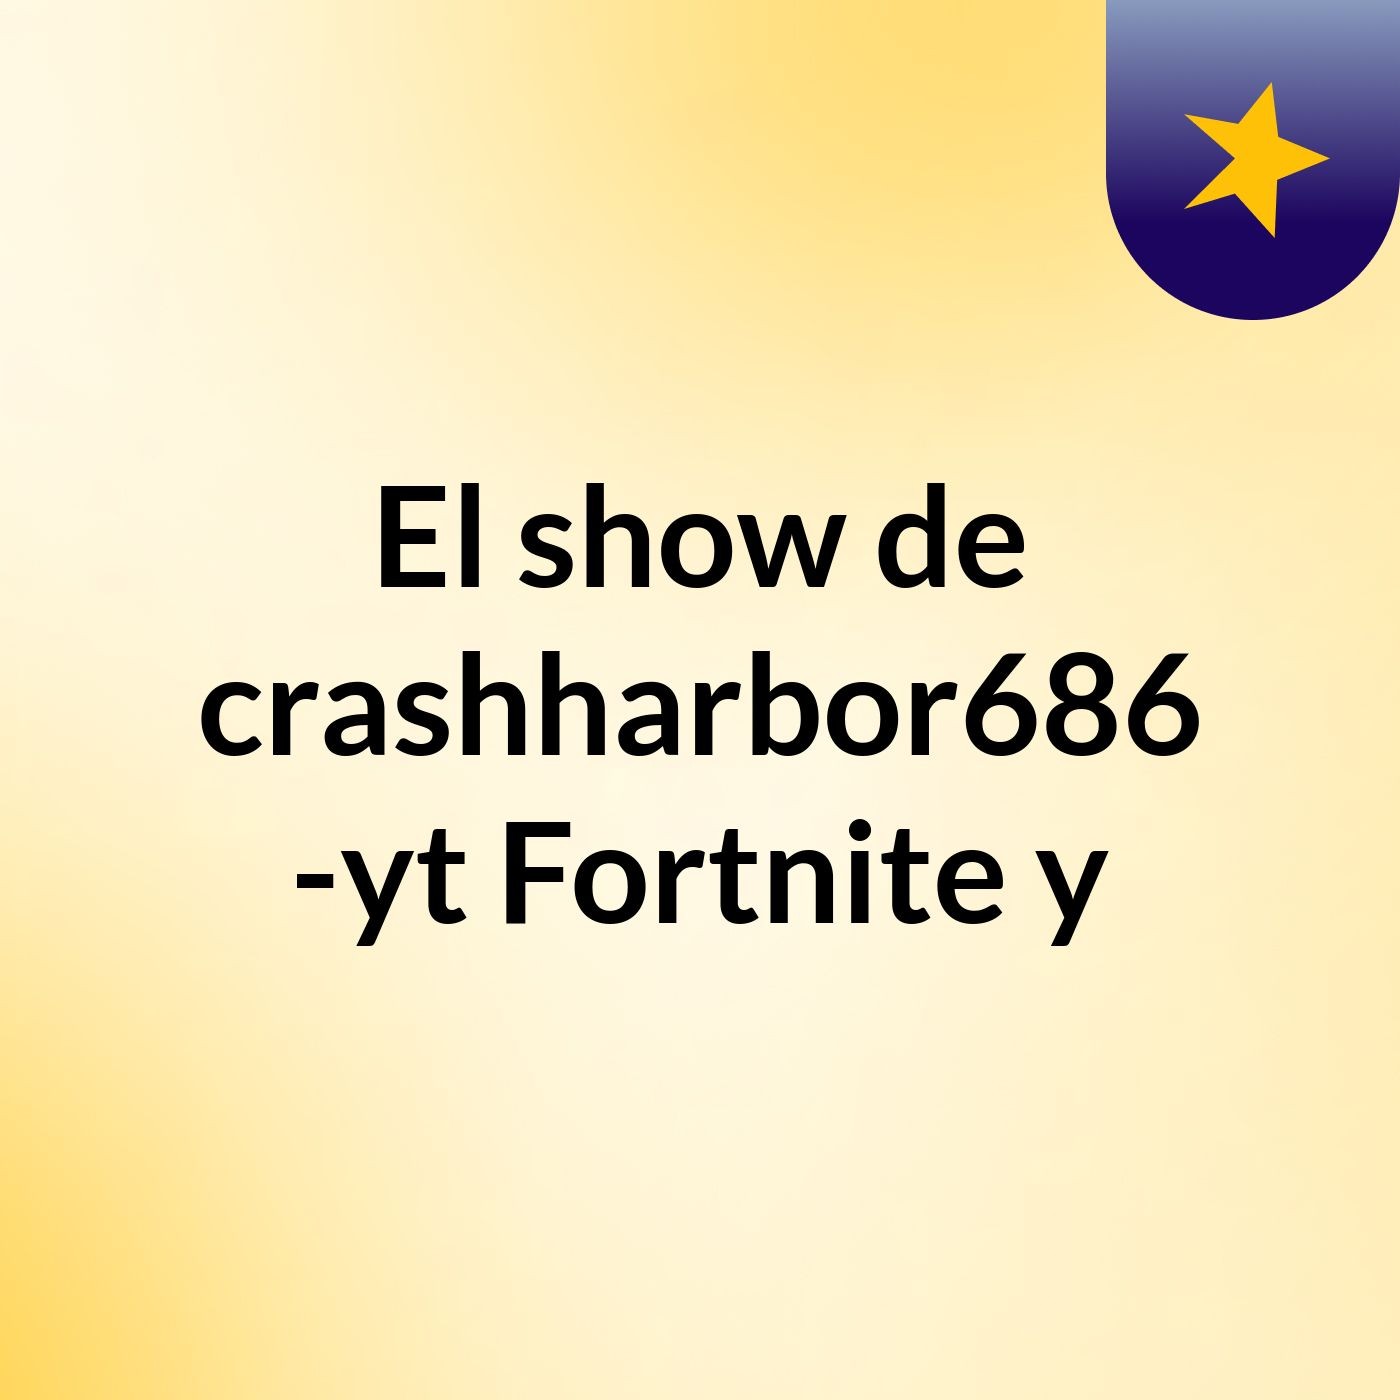 El show de crashharbor686 -yt Fortnite y